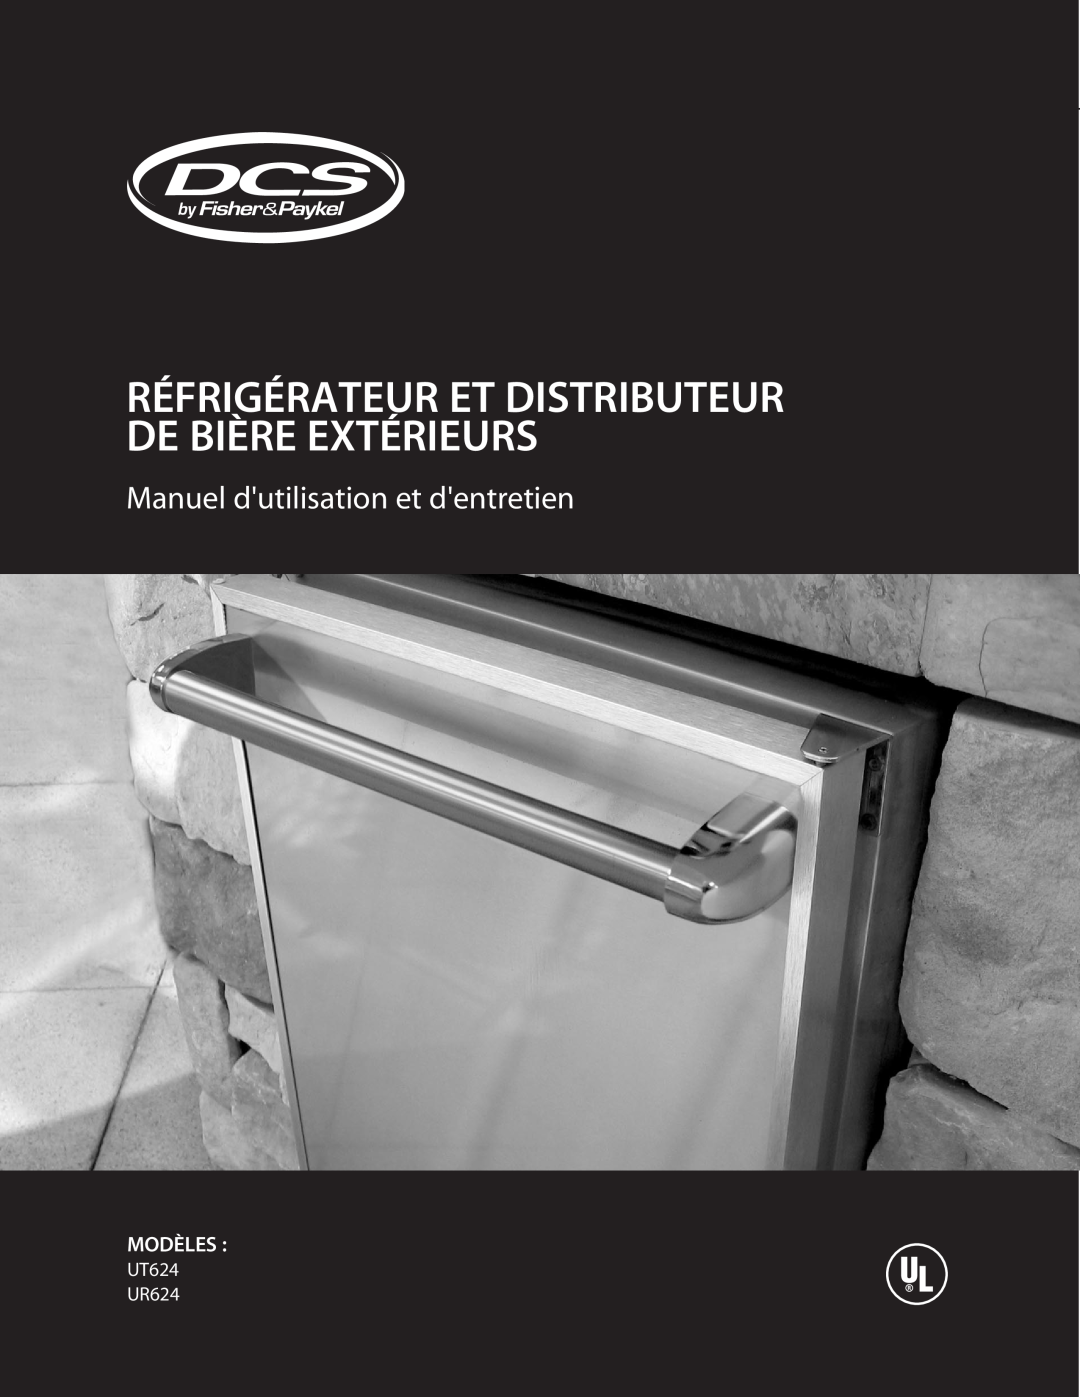 DCS manual Manuel dutilisation et dentretien, Modèles, UT624 UR624, Réfrigérateur Et Distributeur De Bière Extérieurs 